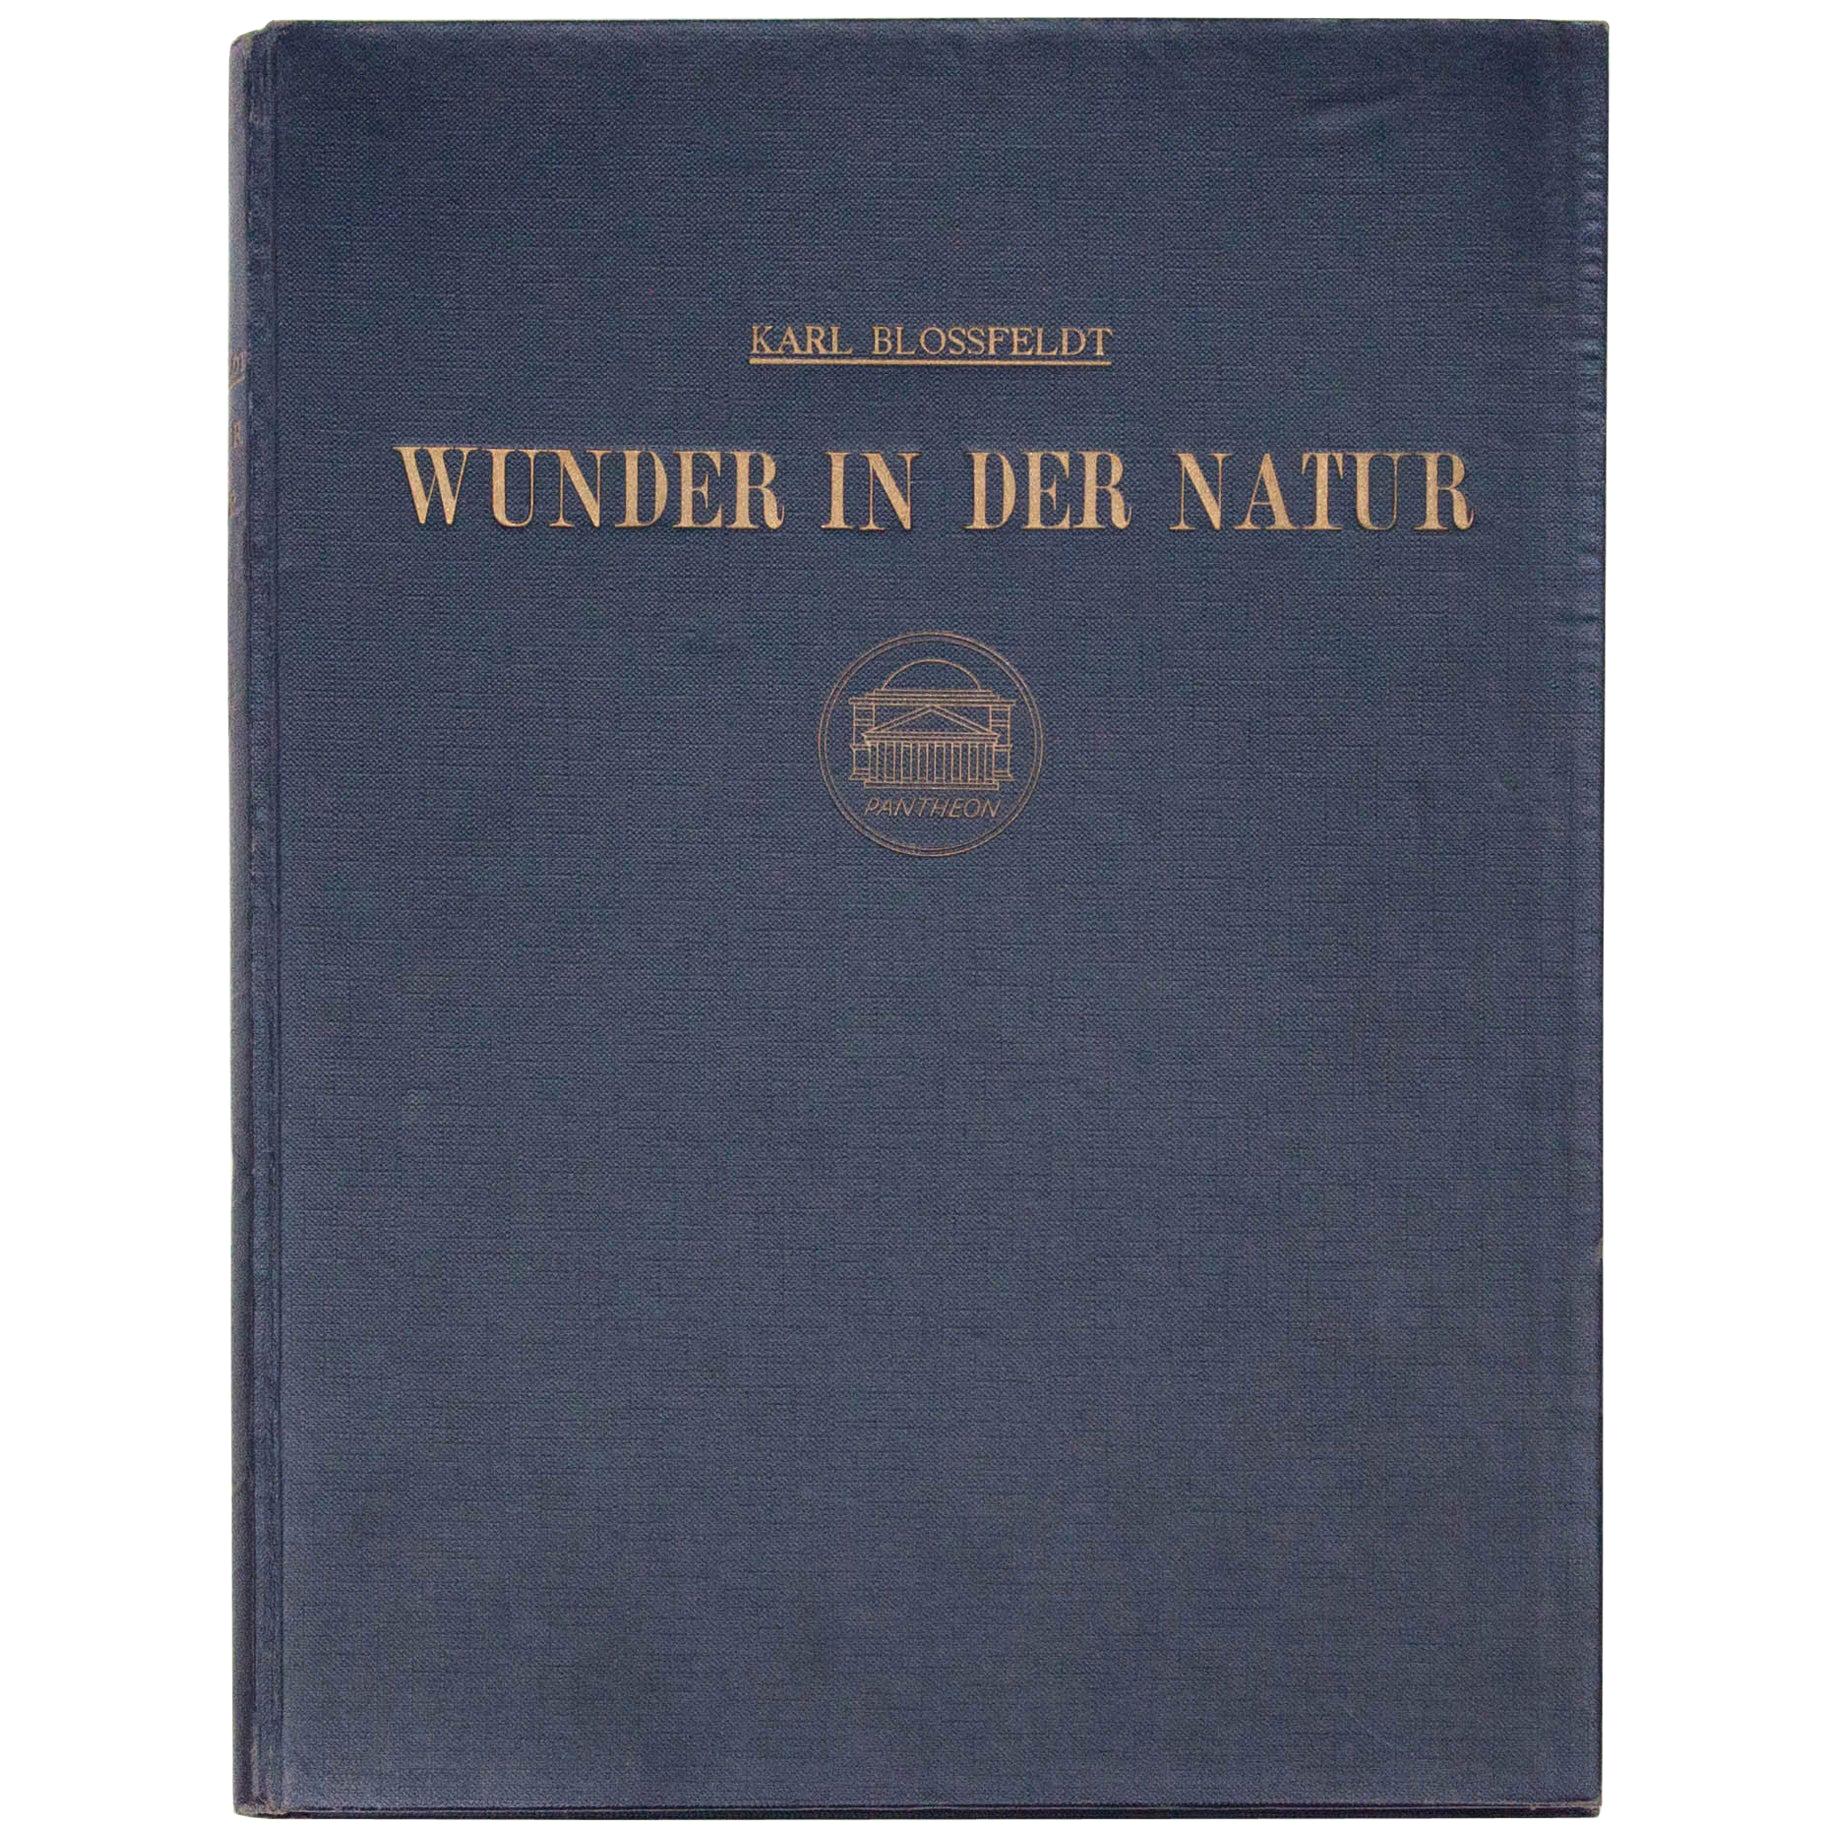 Karl Blossfeldt "Wunder in der Natur" 1942 Book